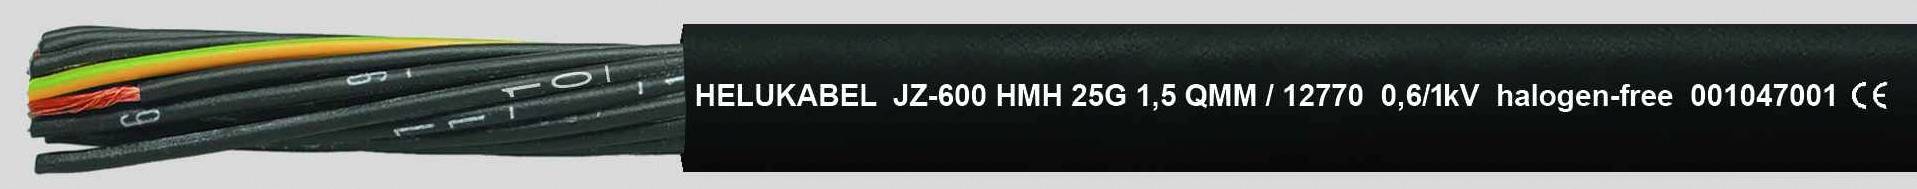 HELUKABEL JZ-600 HMH Steuerleitung 5 G 1.50 mm² Schwarz 12764-1000 1000 m